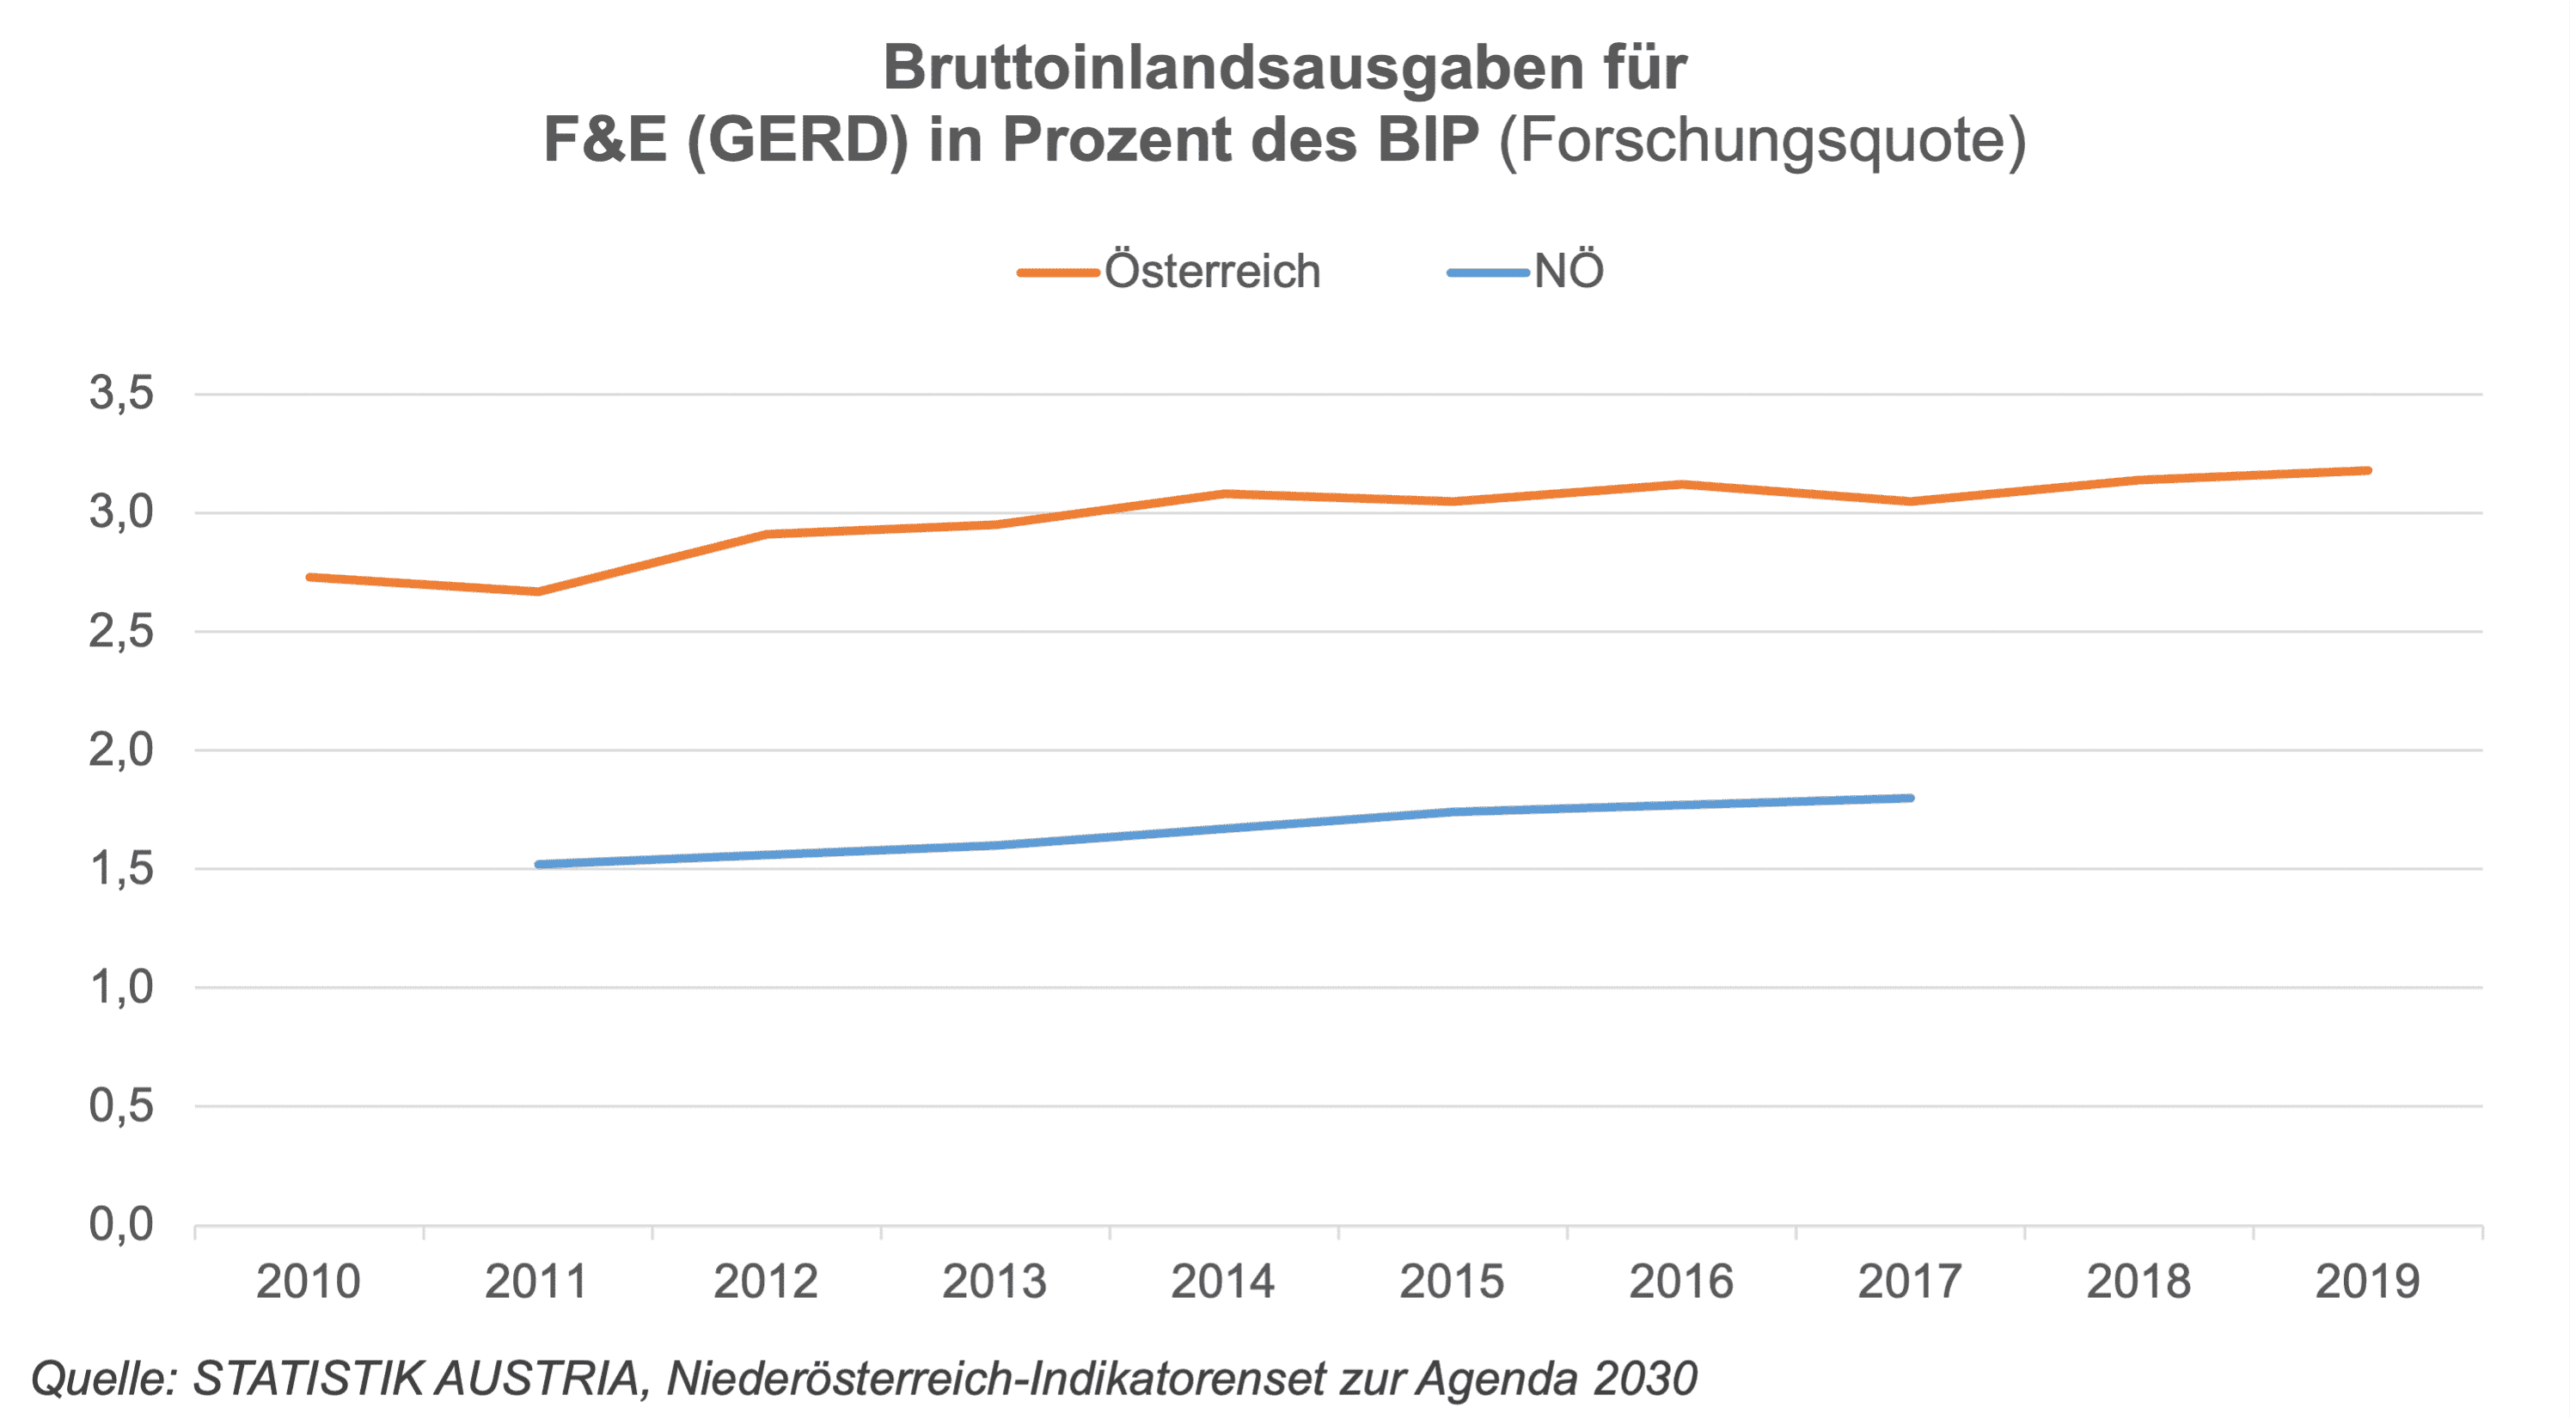 Die Wissenschafts- und Forschungslandschaft in Niederösterreich ist sowohl national als auch international sichtbar und anerkannt. Die Forschungsausgaben sind seit 2010 kontinuierlich, moderat gestiegen.